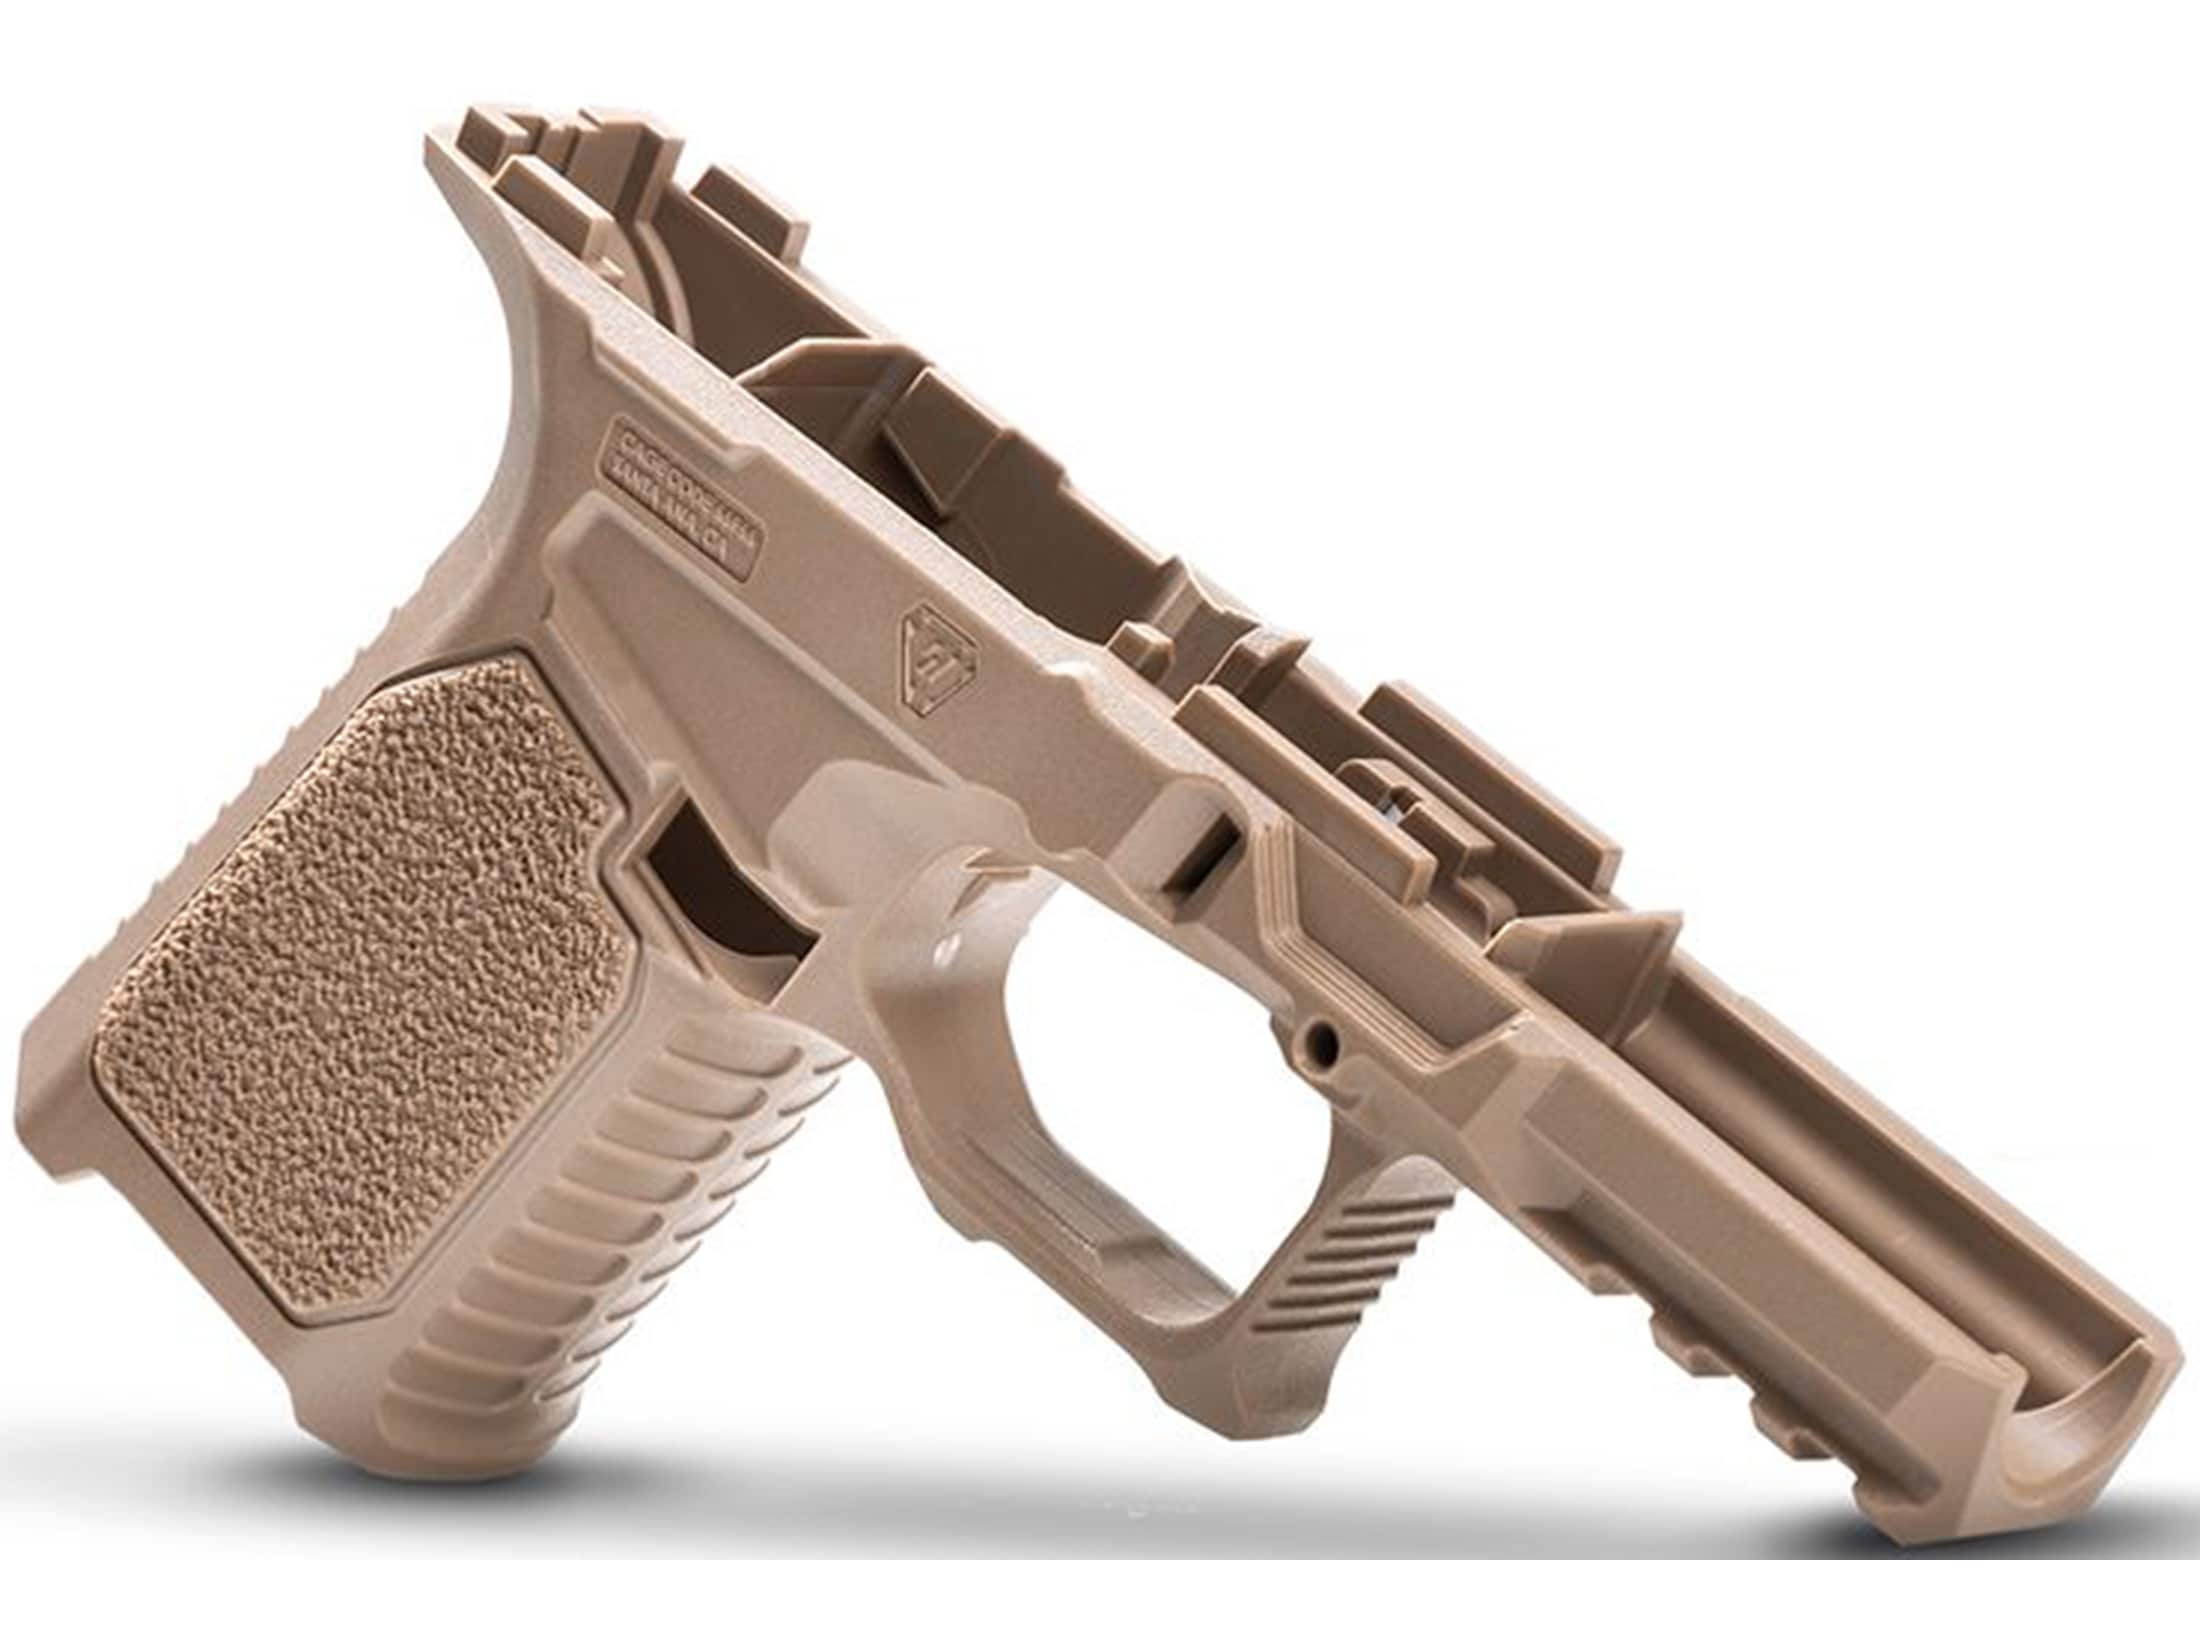 Slide Lock Spring for Glock Gen 5, 80% Compatible Pistols